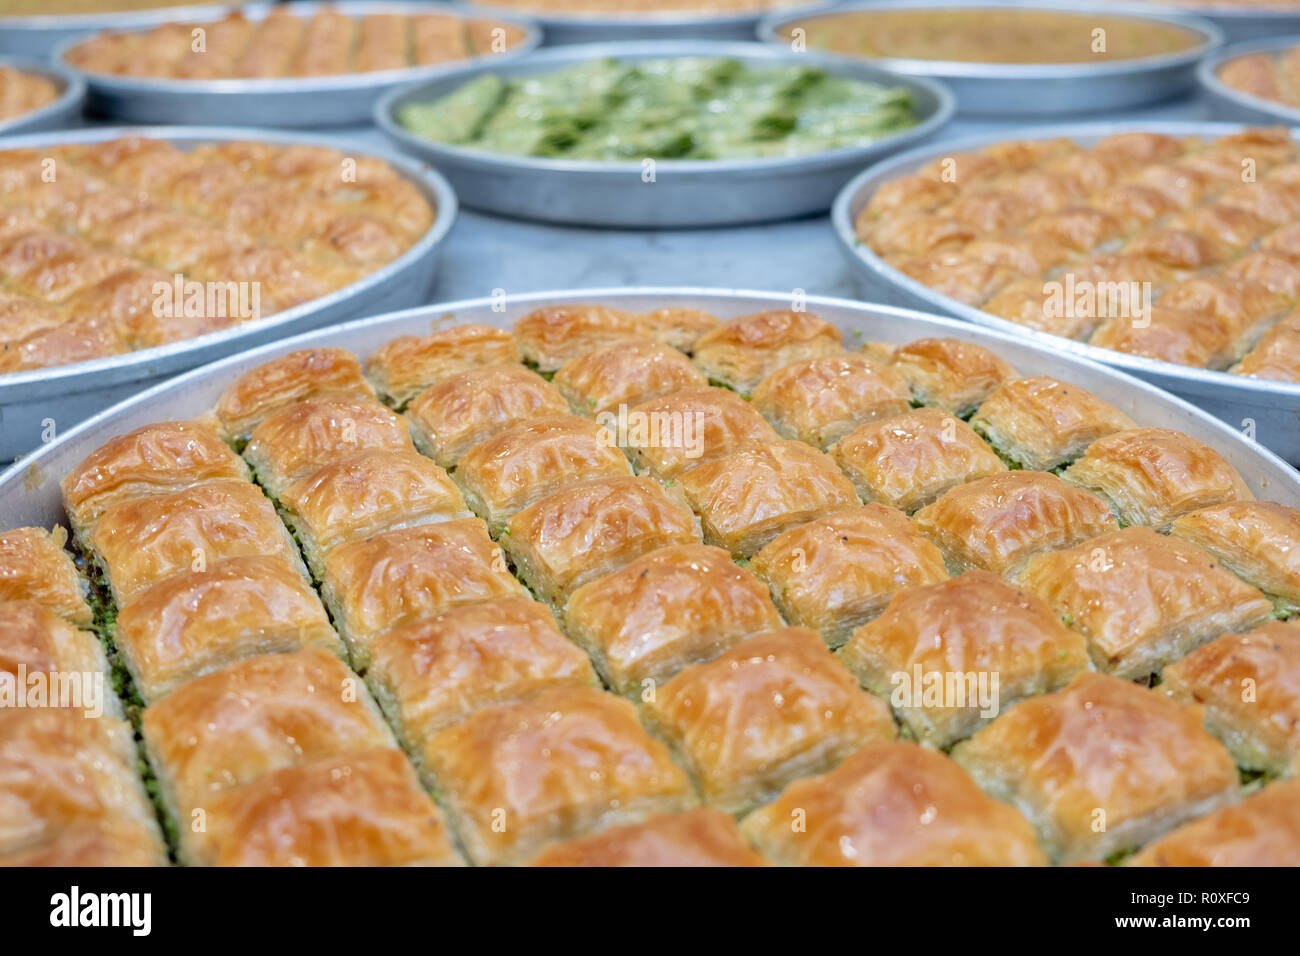 La cuisine turque, baklava sucrées avec les pistaches vertes Banque D'Images